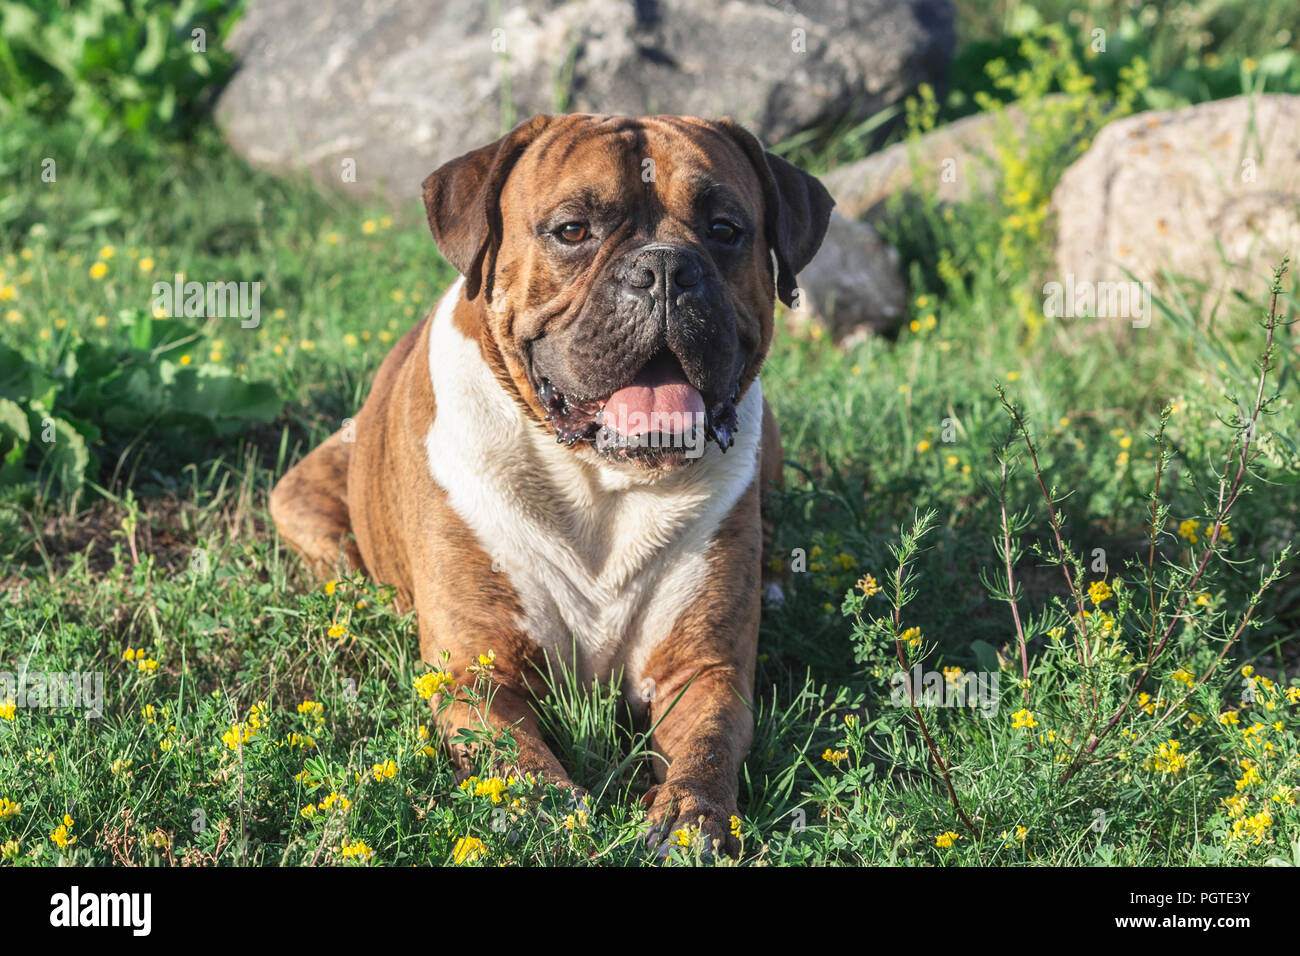 Il cane è un boxer tedesche marrone con strisce, giace sull'erba, il sole illumina l'animale, guarda nella fotocamera, sullo sfondo grigio di grandi dimensioni Foto Stock